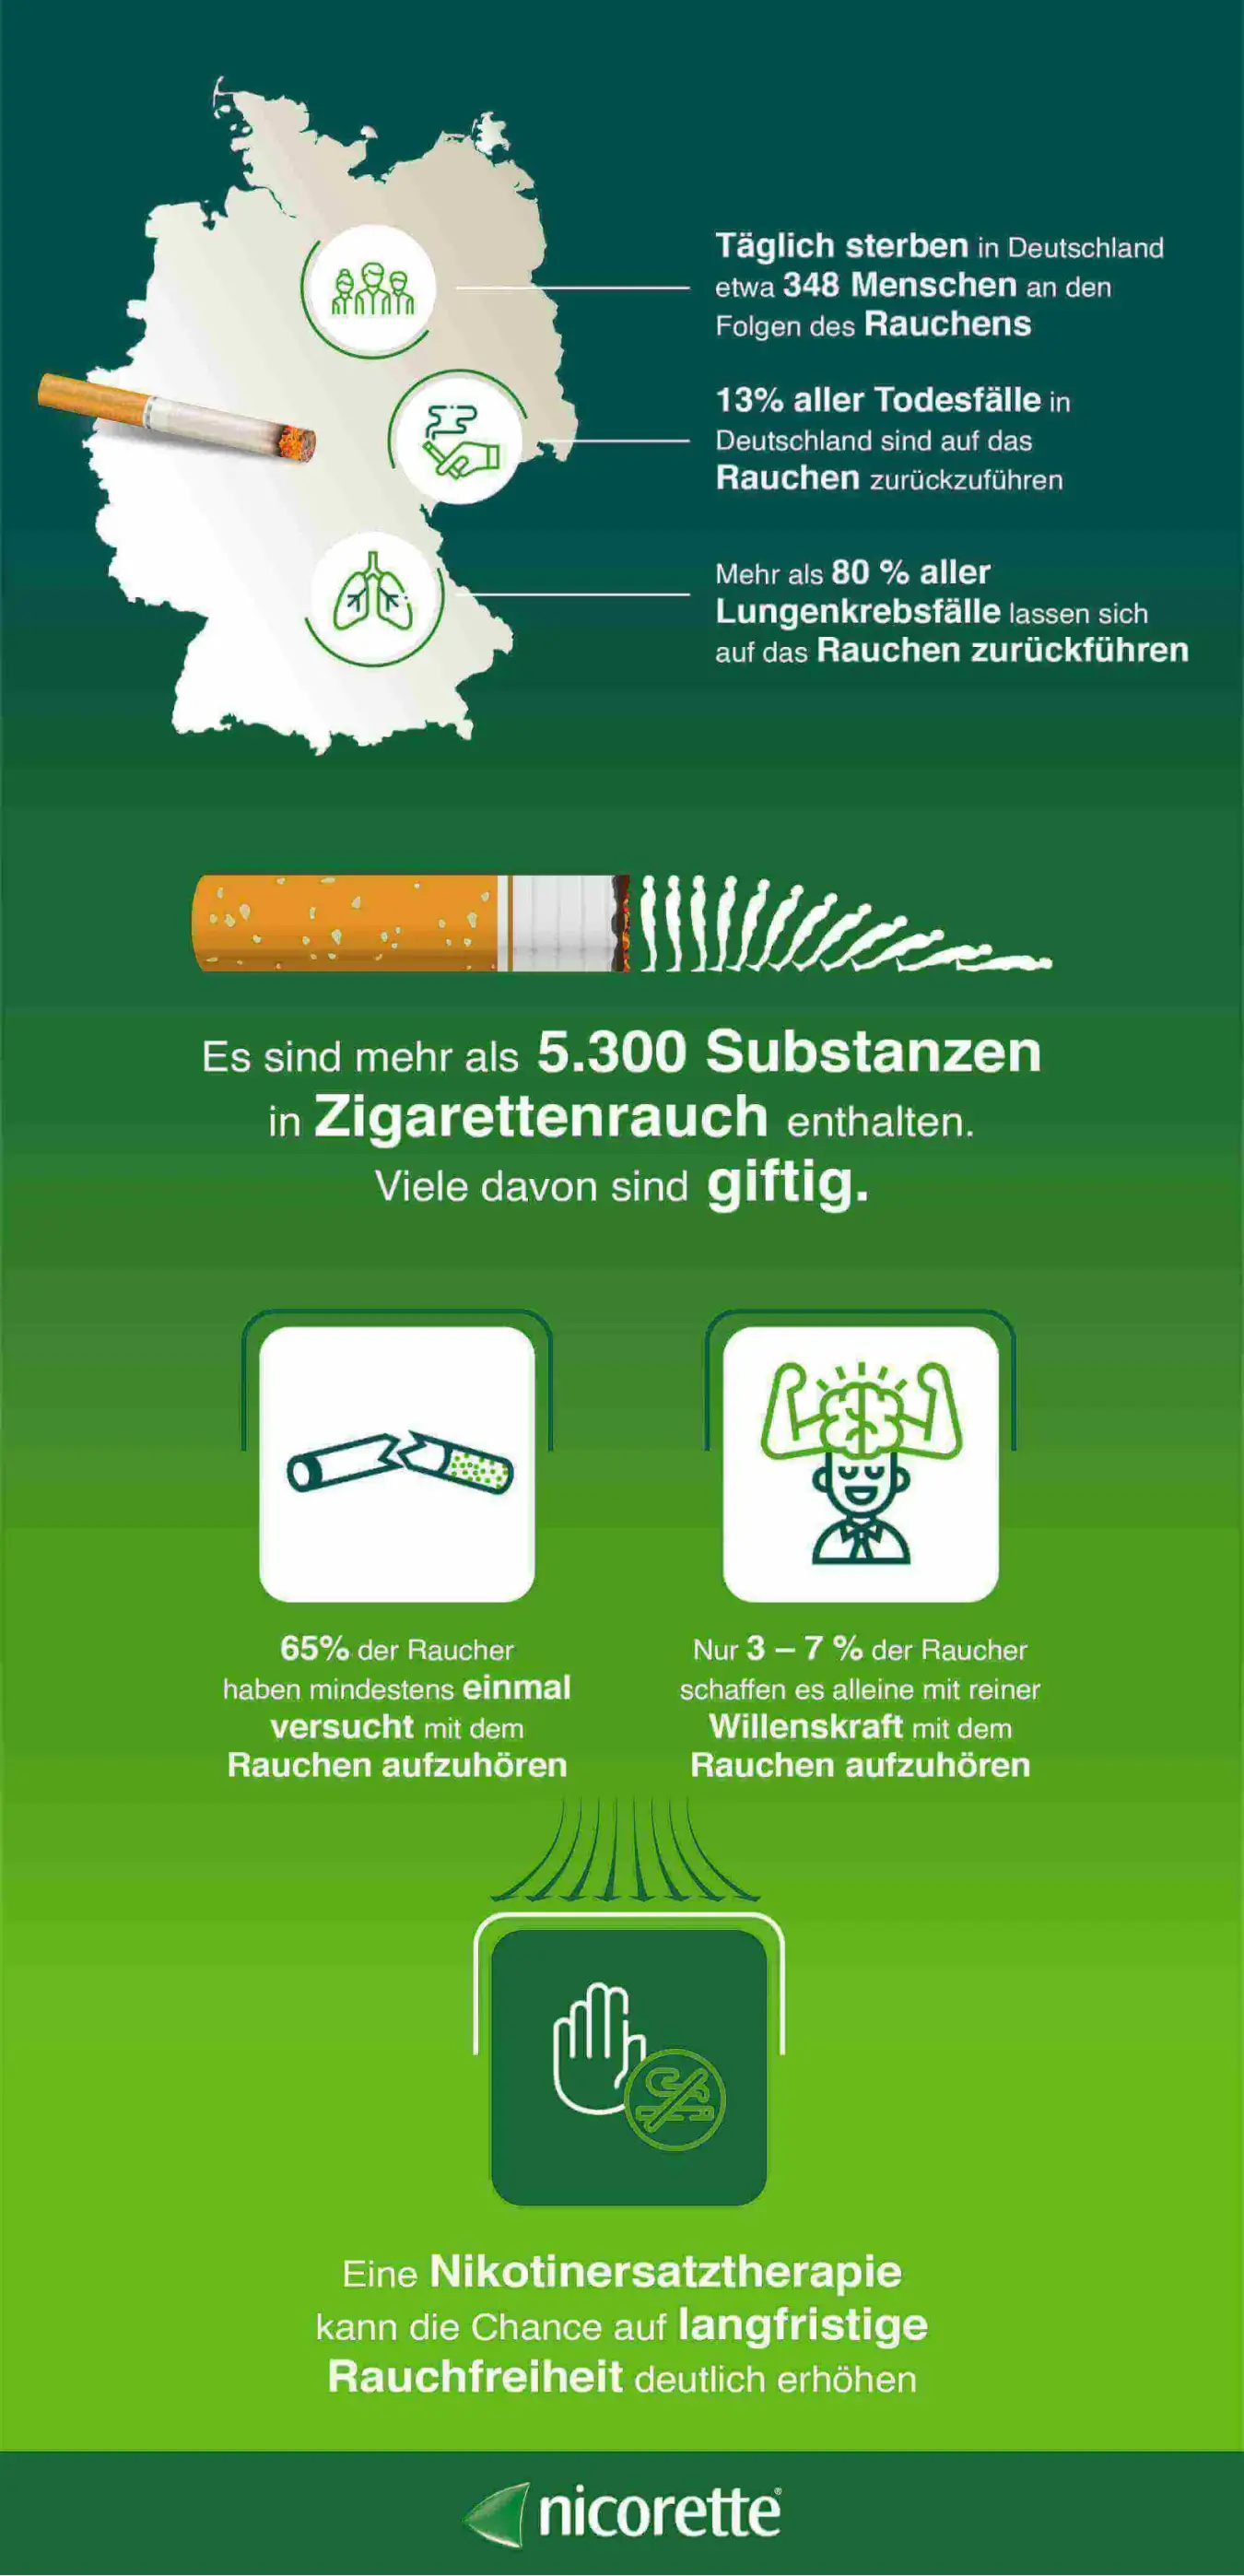 Infografik zu den Folgen des Rauchens: ● Täglich sterben in Deutschland etwa 348 Menschen an den Folgen des Rauchens. ● 13% aller Todesfälle in Deutschland sind auf das Rauchen zurückzuführen. ● Mehr als 80% aller Lungenkrebsfälle lassen sich auf das Rauchen zurückführen. ● Es sind mehr als 5.300 Substanzen in Zigarettenrauch enthalten. Viele davon sind giftig. ● 65% der Raucher haben mindestens einmal versucht, mit dem Rauchen aufzuhören. ● Nur 3-7% der Raucher schaffen es alleine mit reiner Willenskraft, mit dem Rauchen aufzuhören ● Eine Nikotinersatztherapie kann die Chancen auf langfristige Rauchfreiheit deutlich erhöhen.